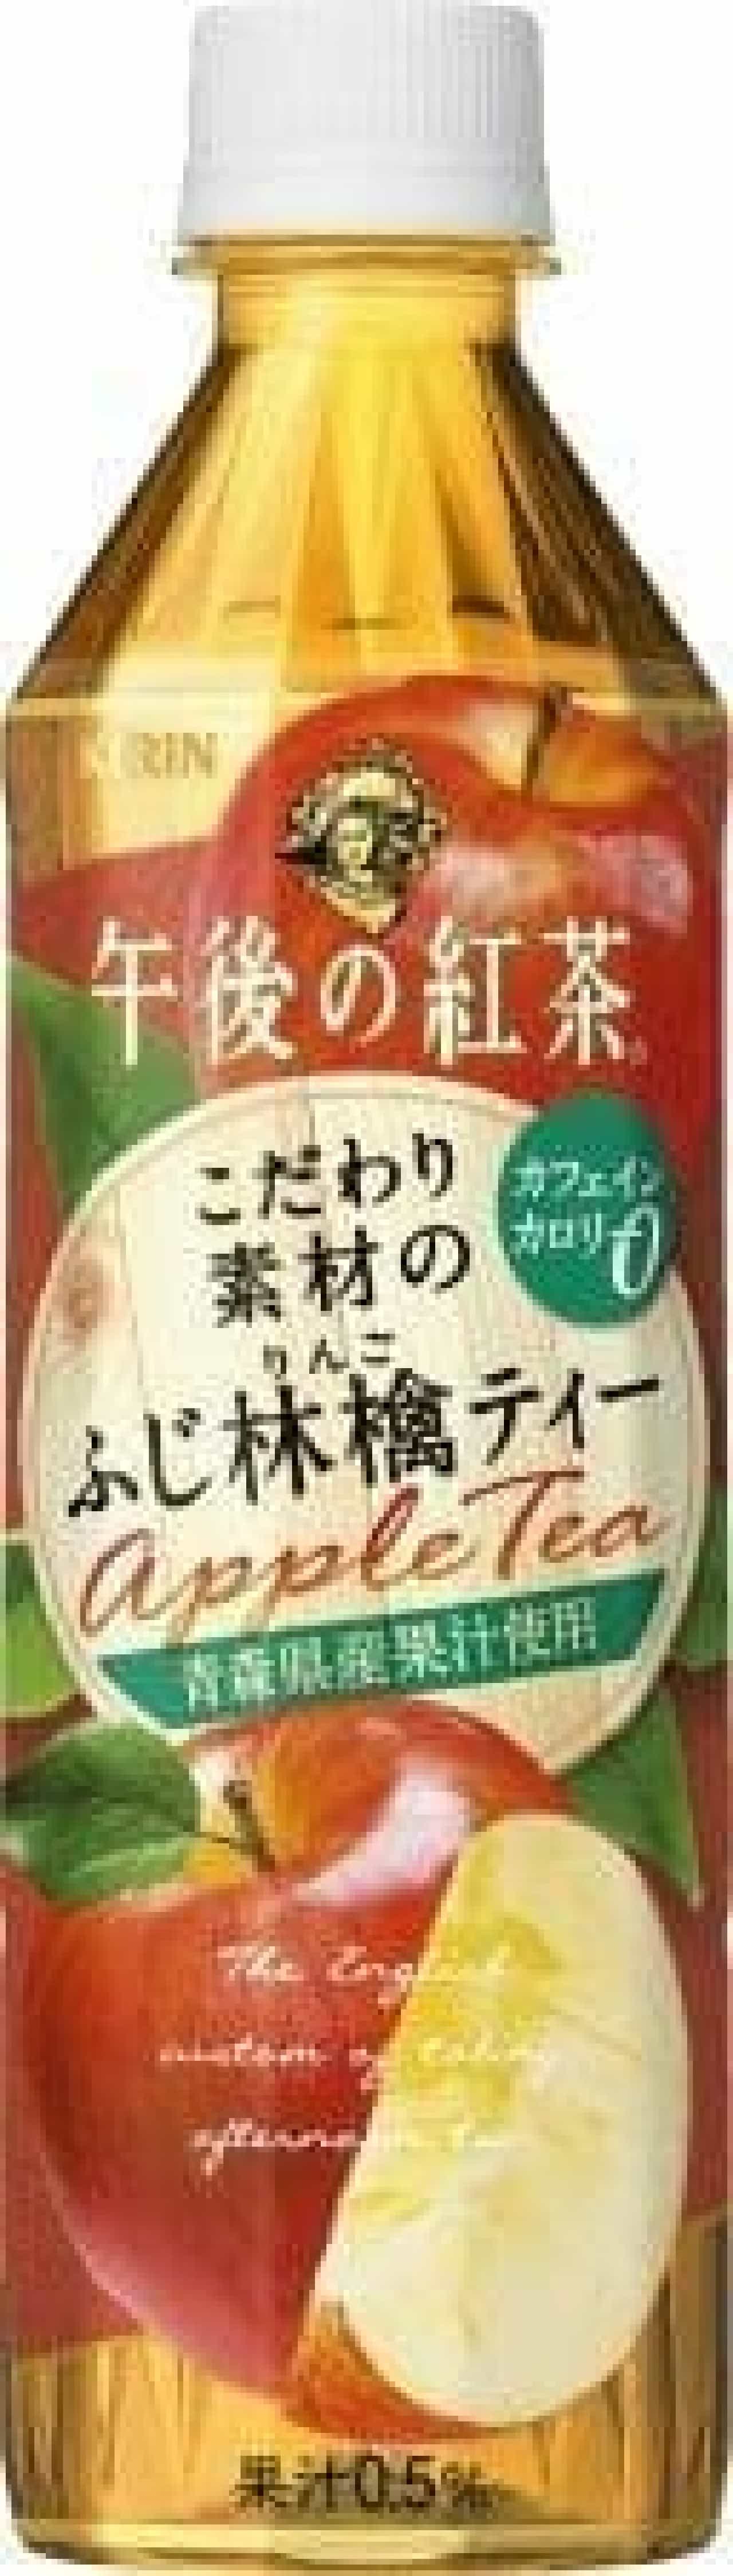 Kirin "Kirin Afternoon Tea Fuji Apple Tea"